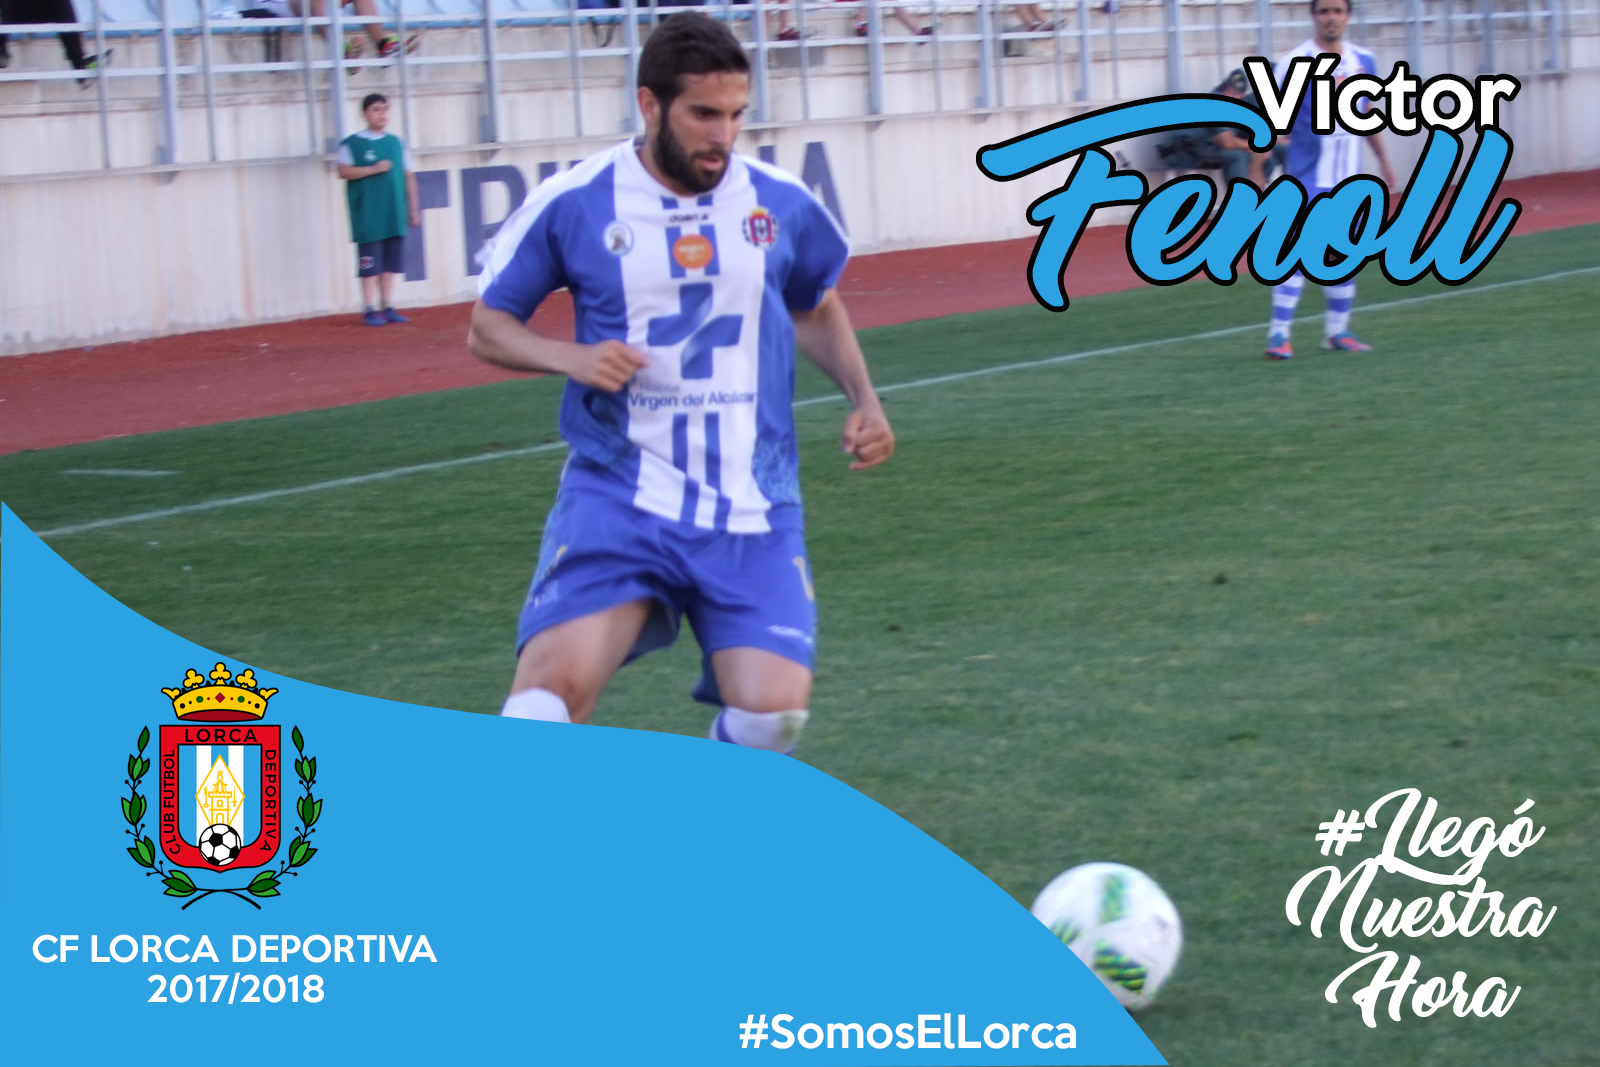 COMUNICADO: Víctor Fenoll seguirá una temporada más en el Lorca Deportiva